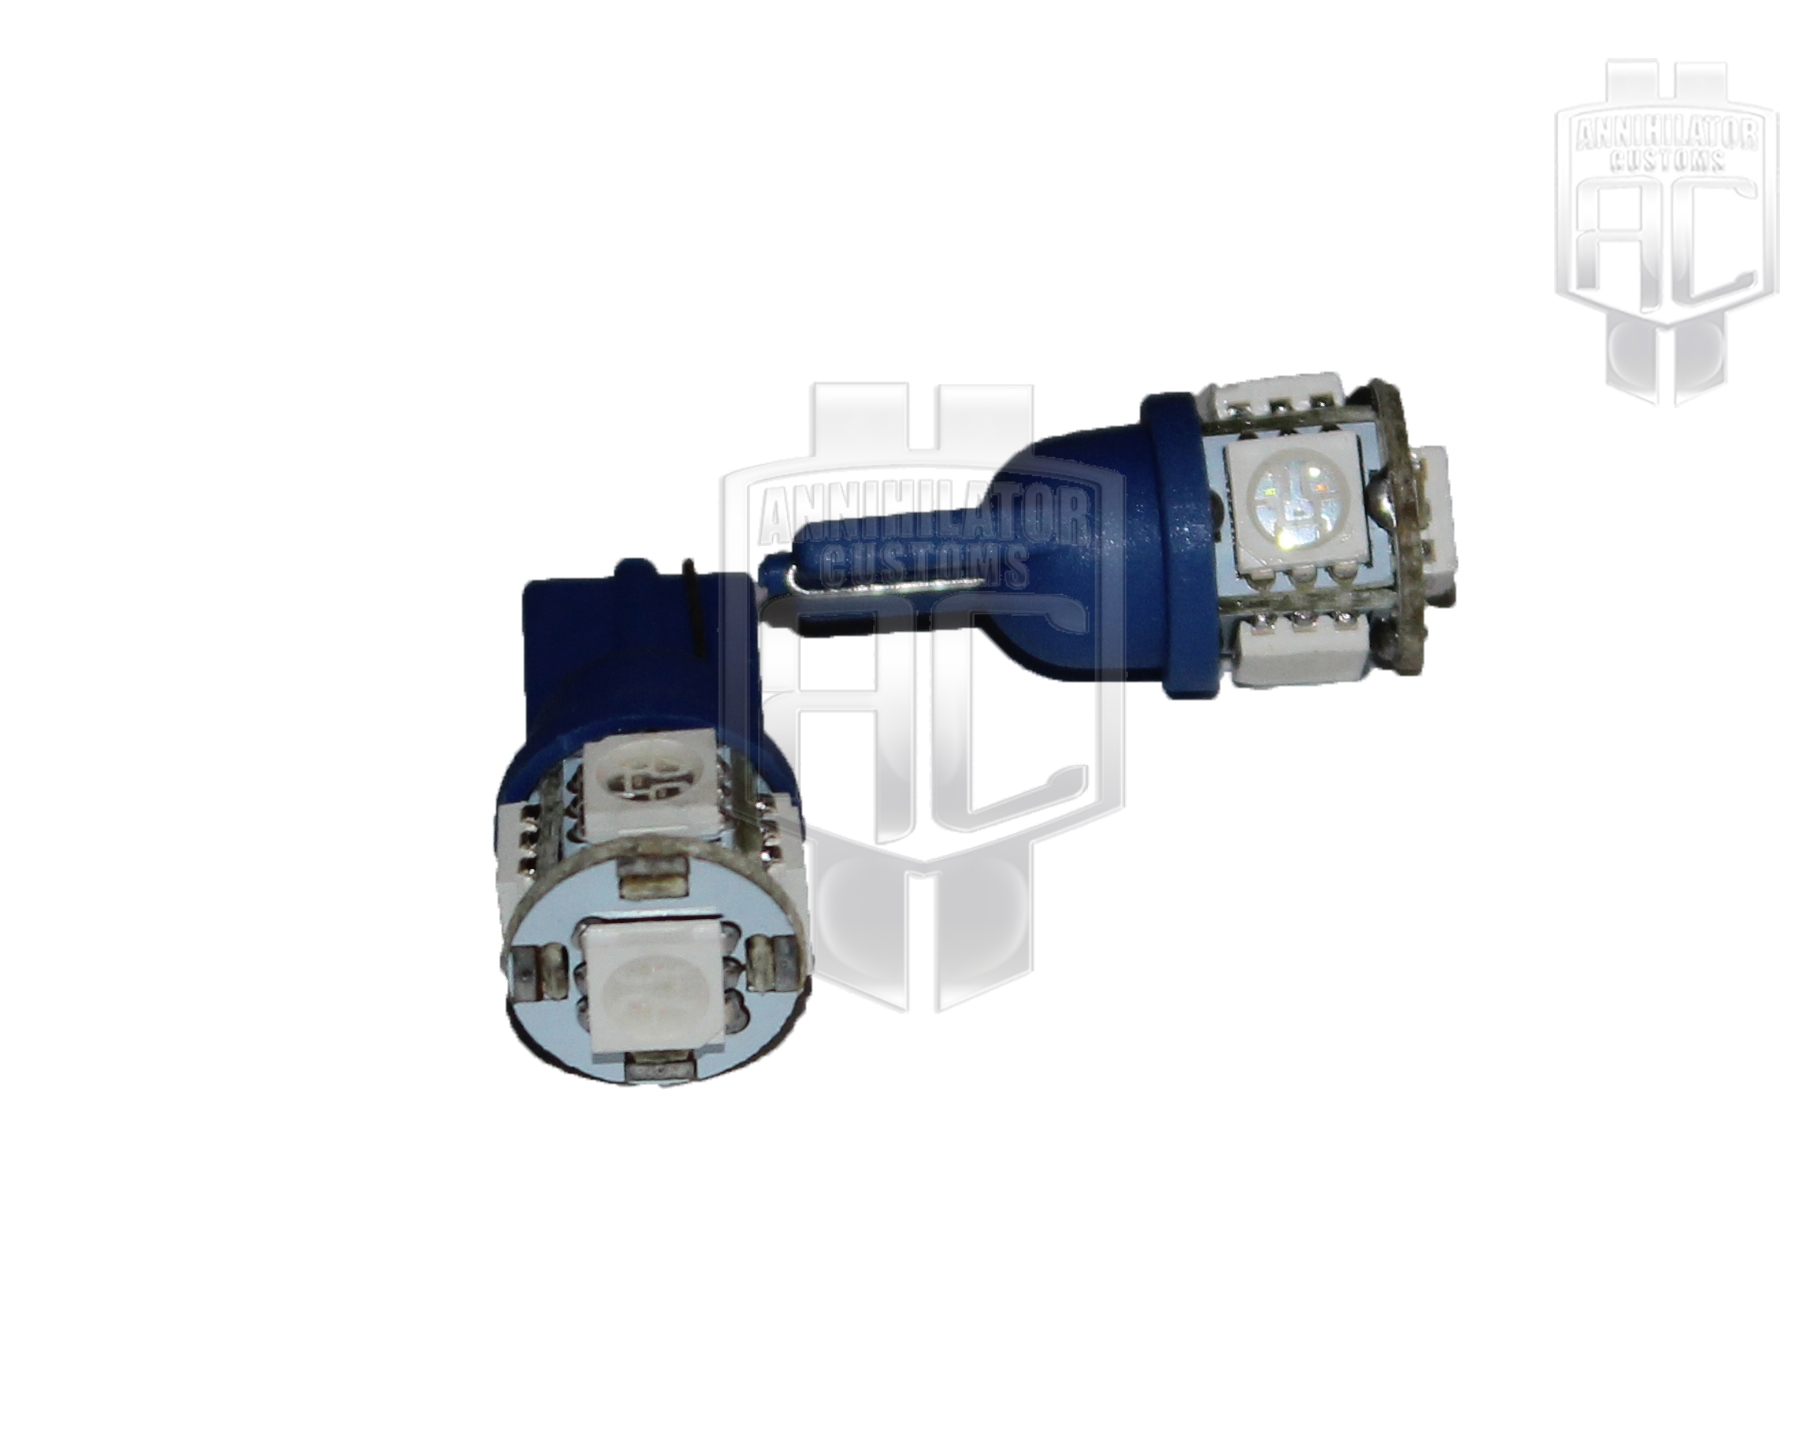 T10/W5W/194 5pc 5050 SMD LED Light Bulbs